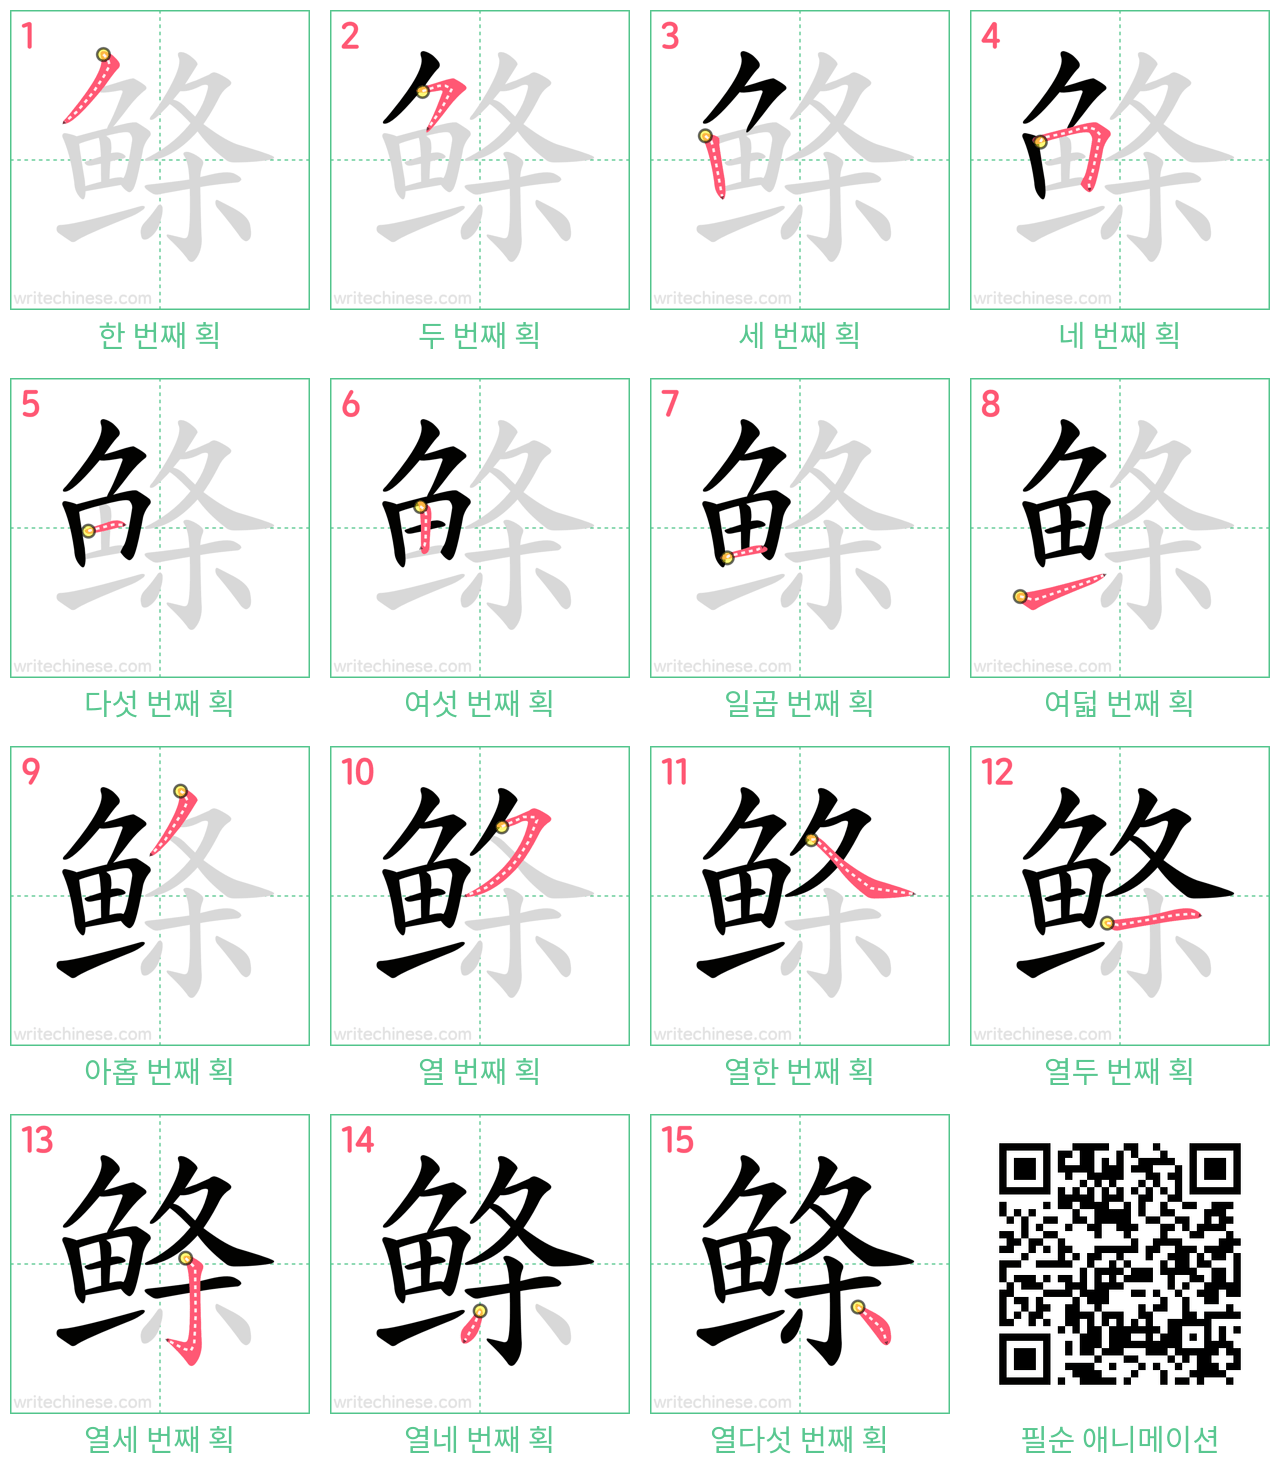 鲦 step-by-step stroke order diagrams